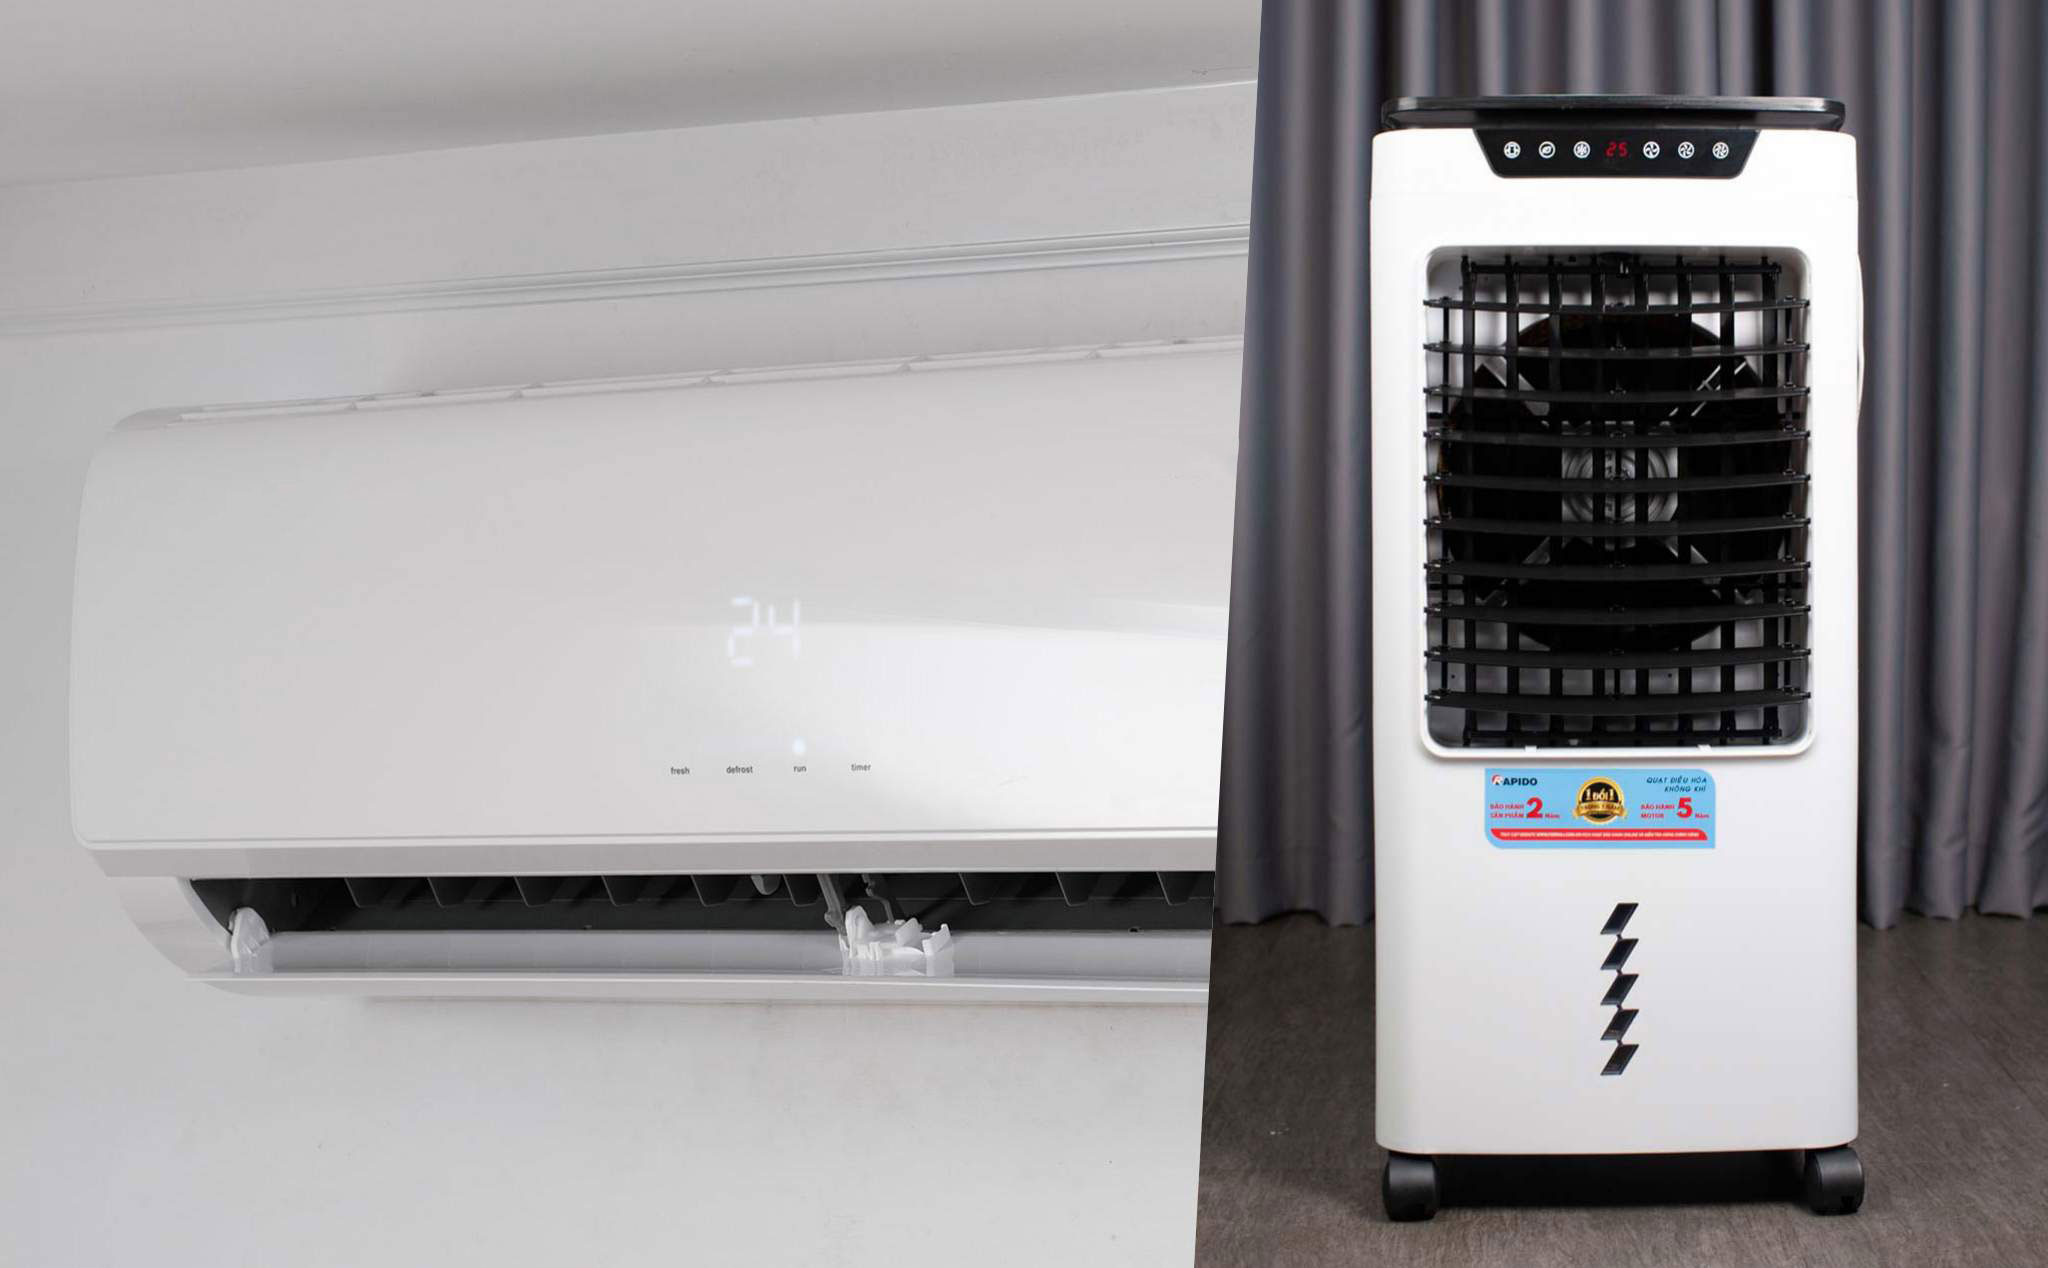 Quạt hơi nước hay máy lạnh giá rẻ, nên chọn loại nào cho mùa nóng?